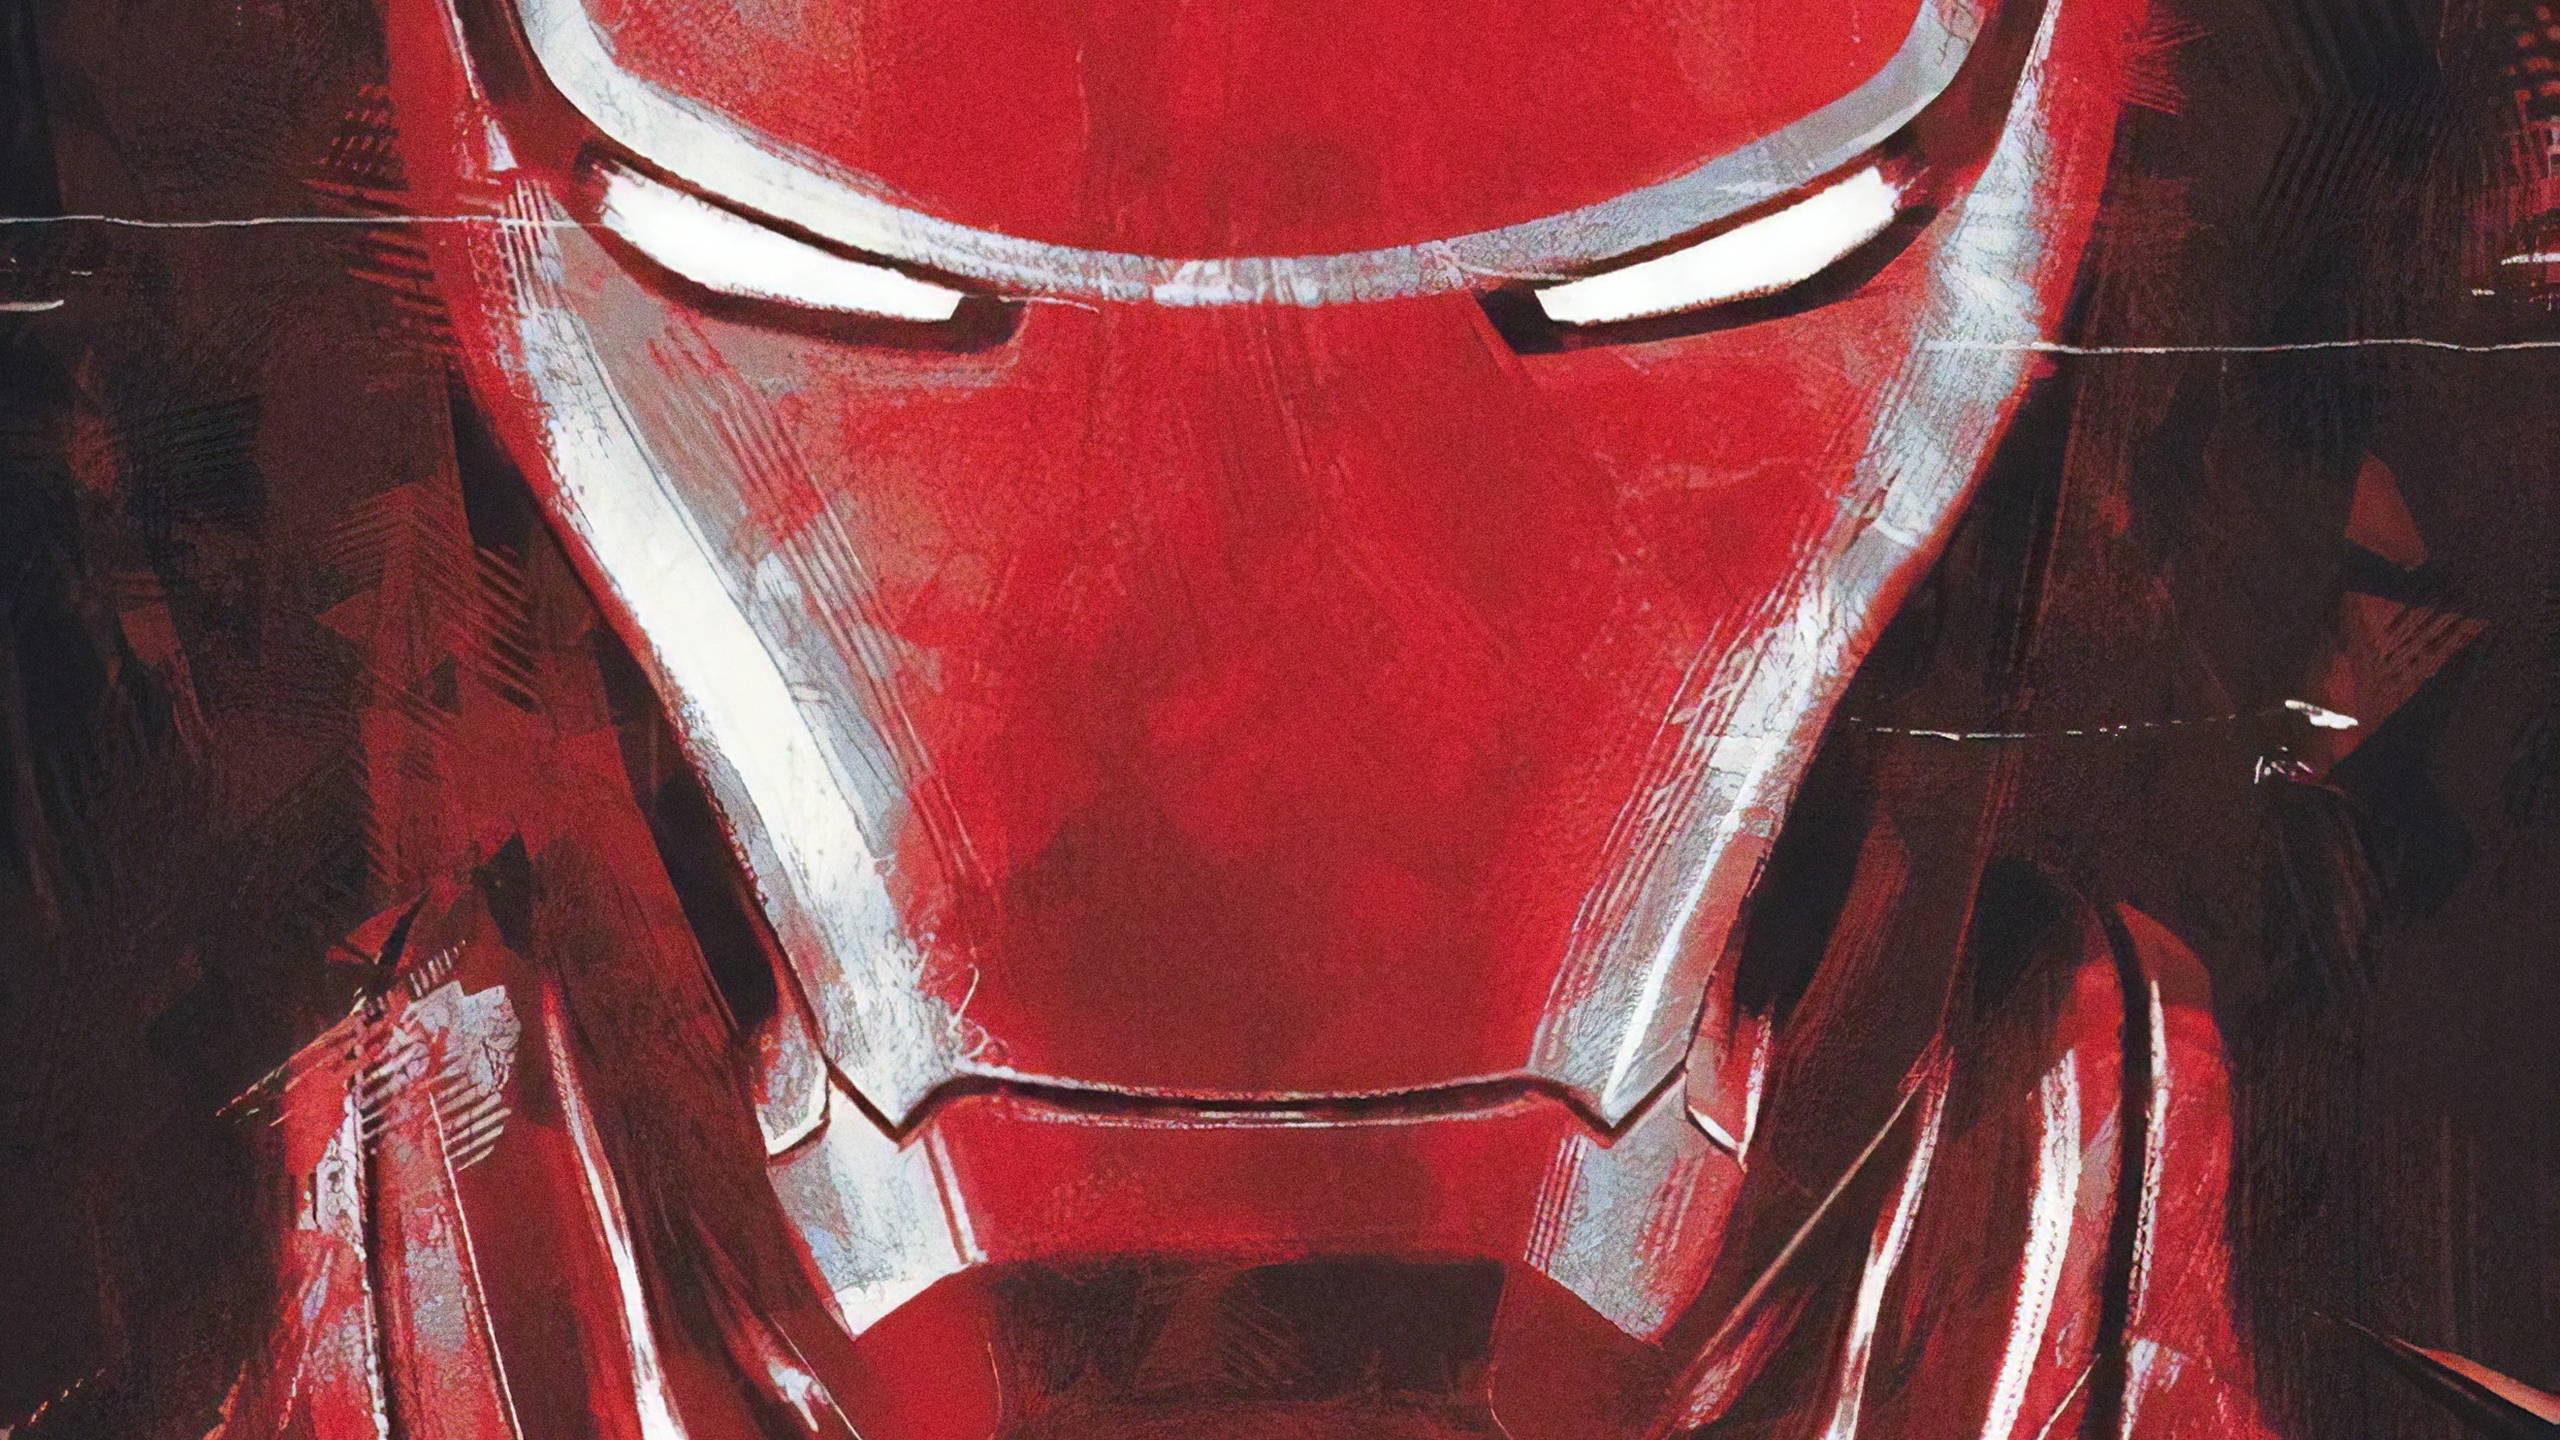 Iron Man in Avengers 4 Endgame